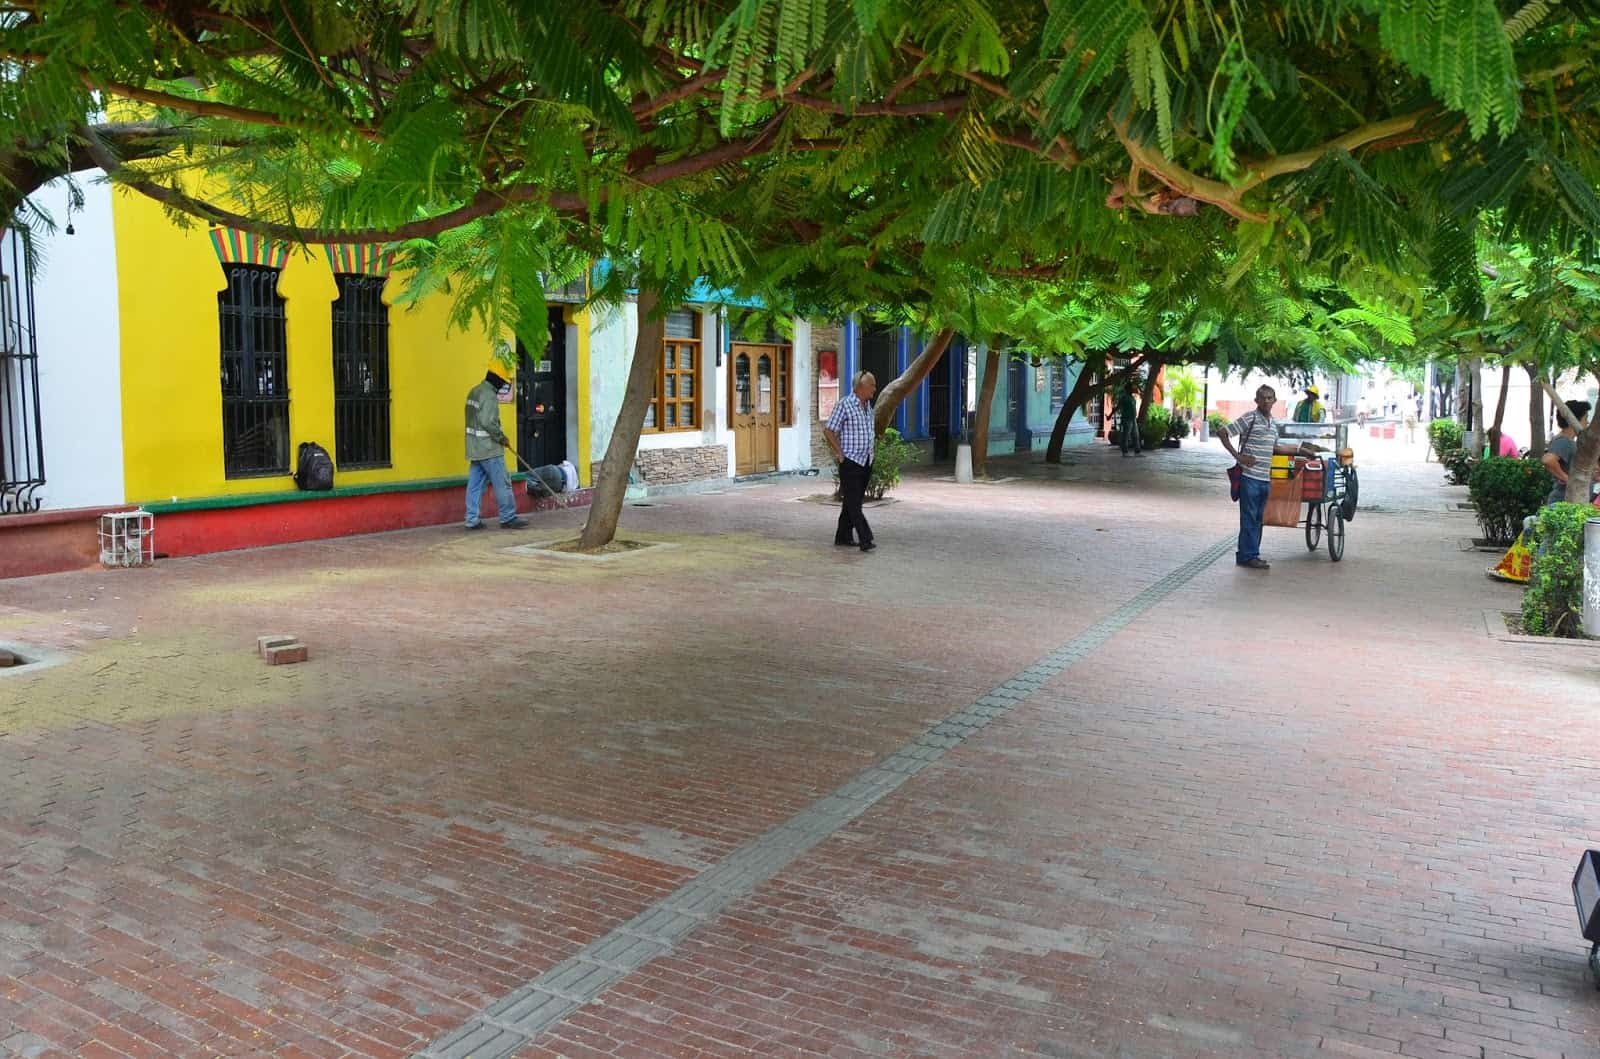 Parque de Los Novios in Santa Marta, Magdalena, Colombia